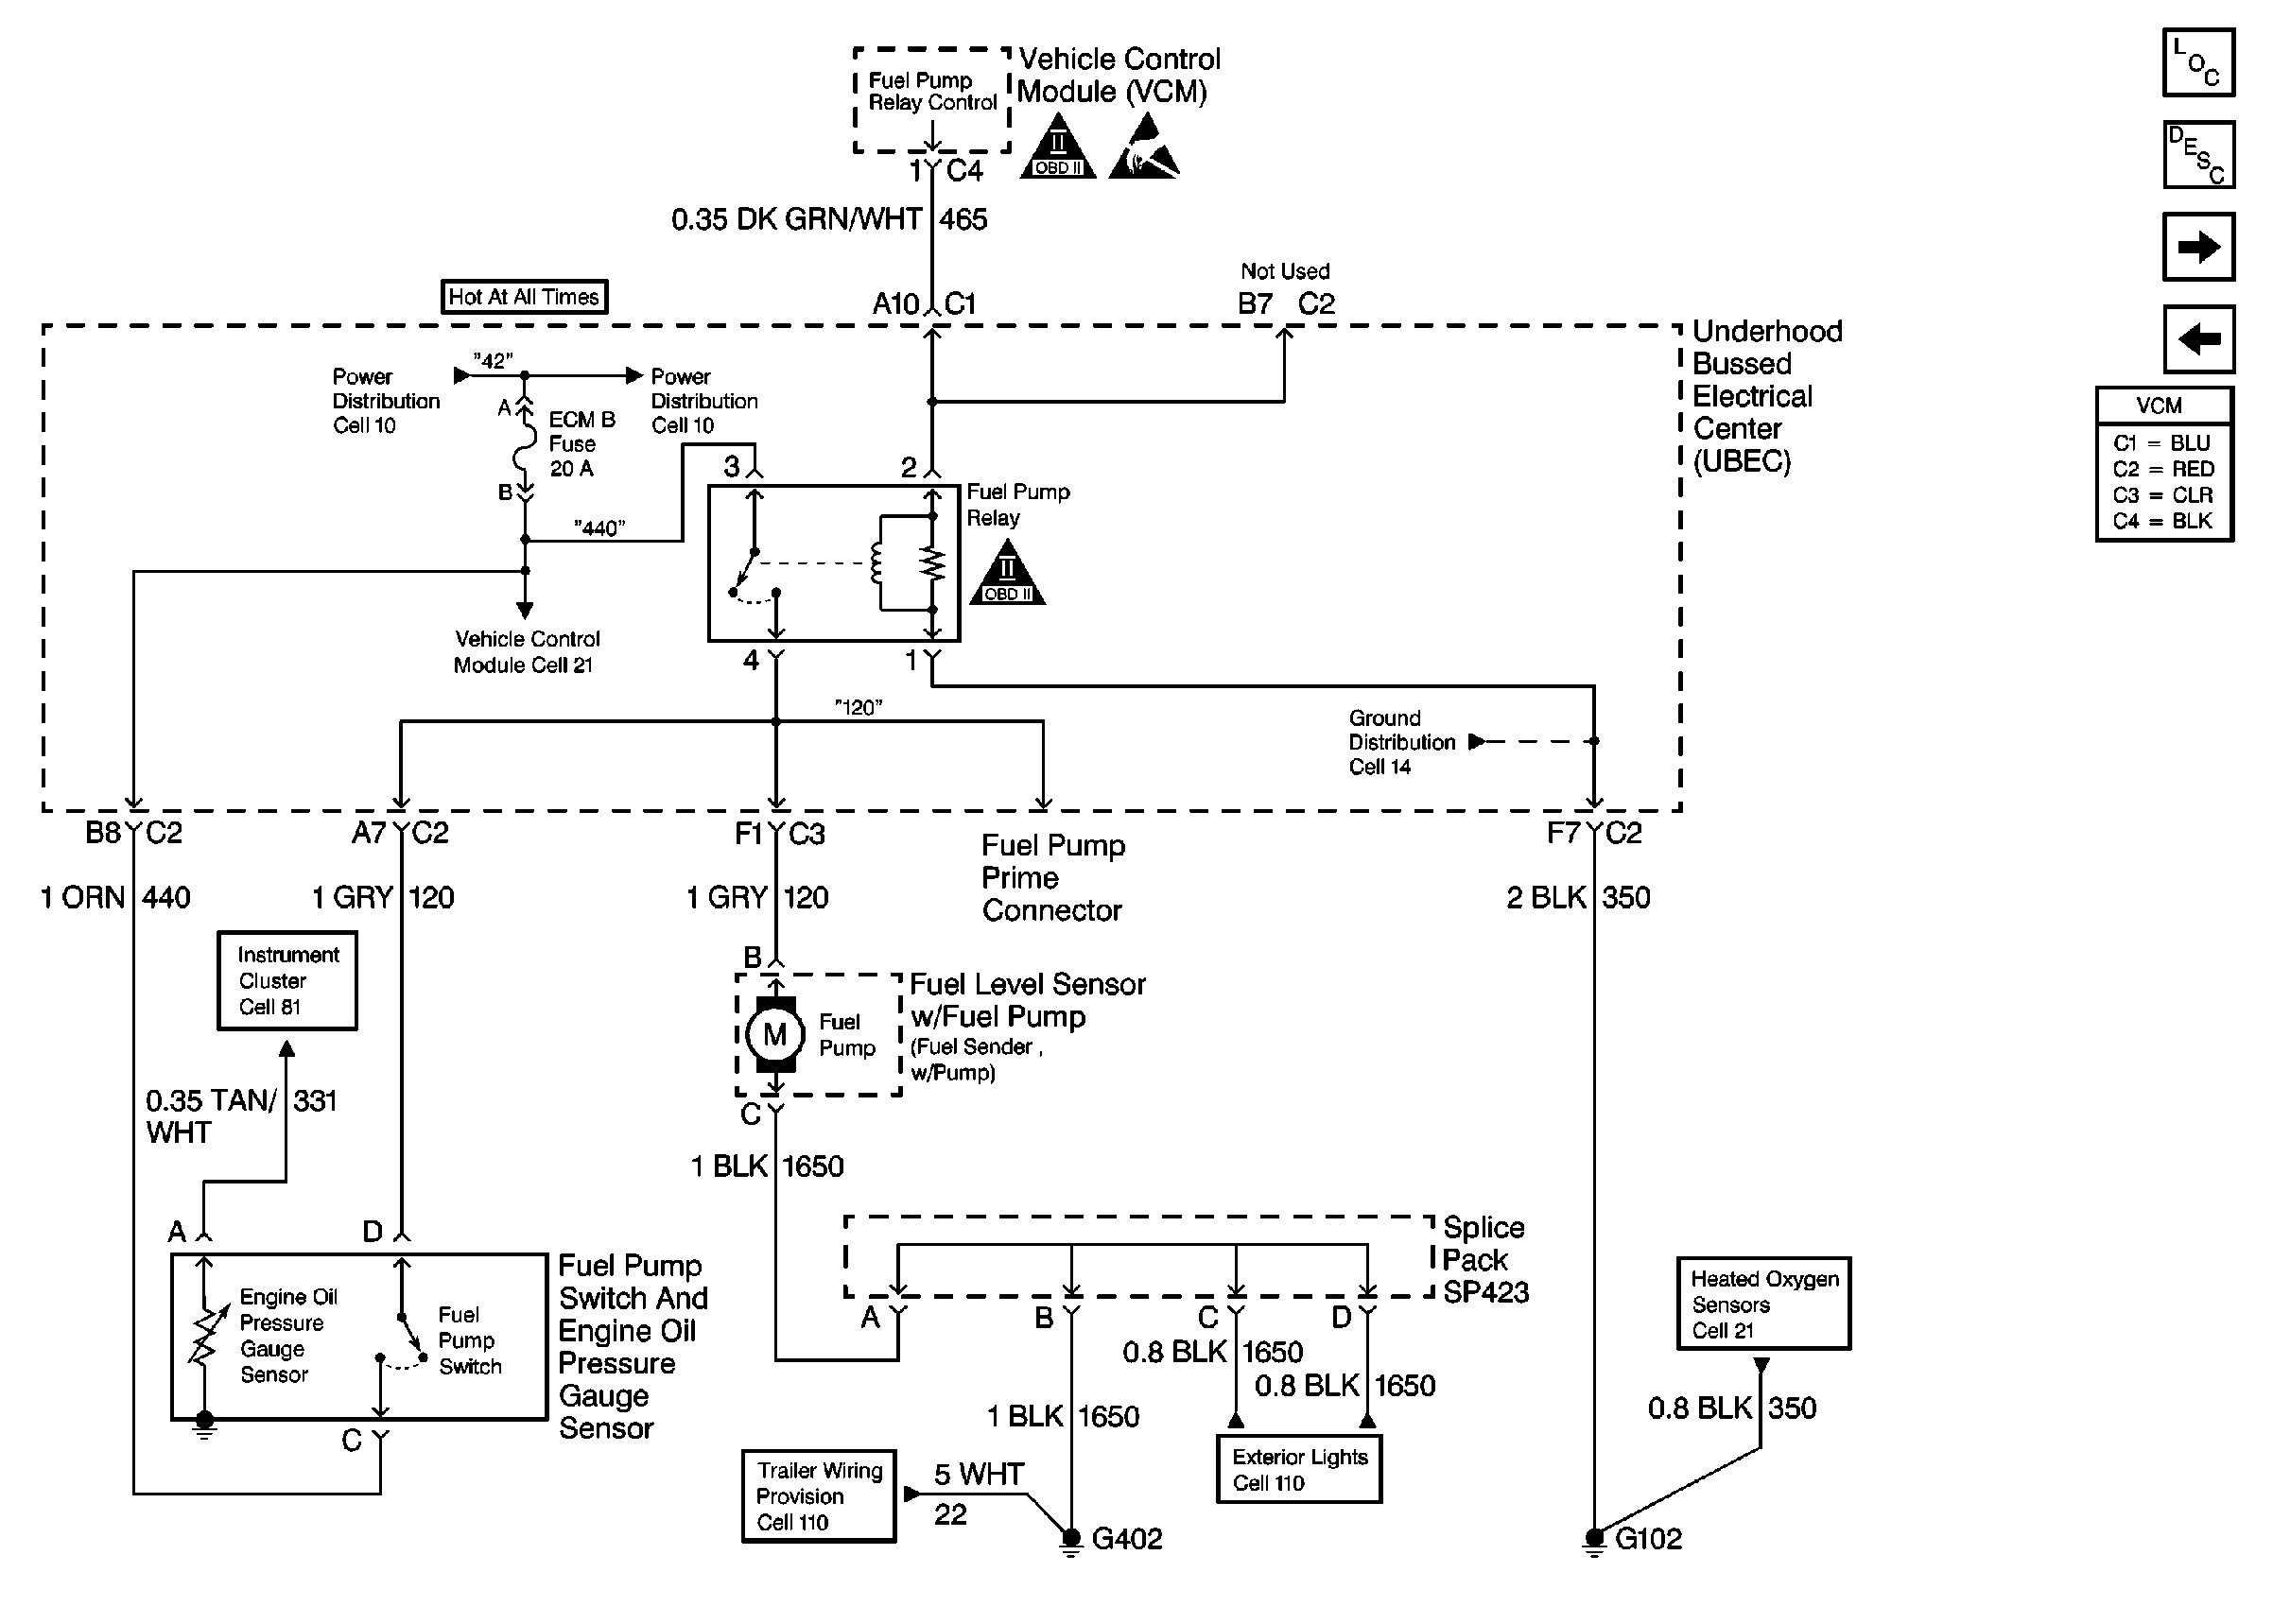 Ignition Switch Wiring Diagram 2001 Blazer Best 1998 Chevy Tahoe Wiring Diagram Fresh Wiring Diagrams for